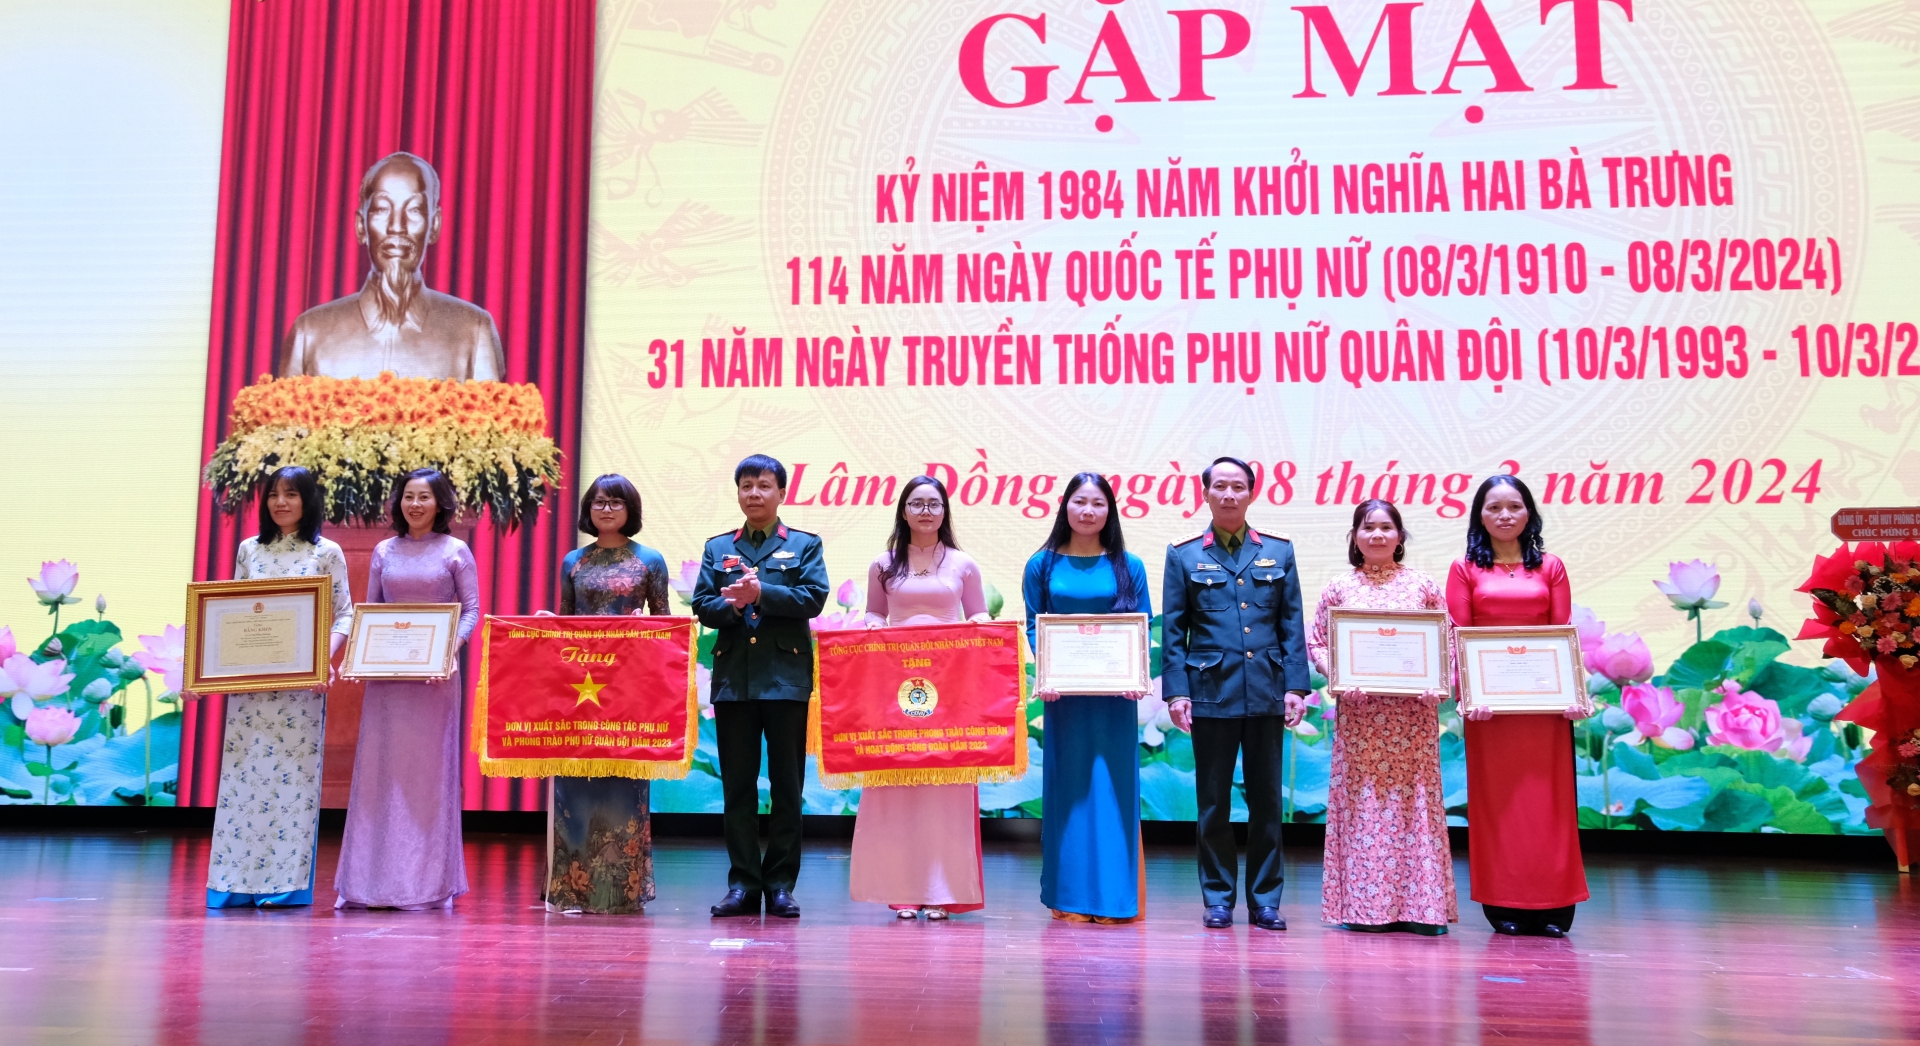 Phụ nữ Học viện Lục quân nhận khen thưởng của Tổng Liên đoàn Lao động Việt Nam và Tổng cục Chính trị